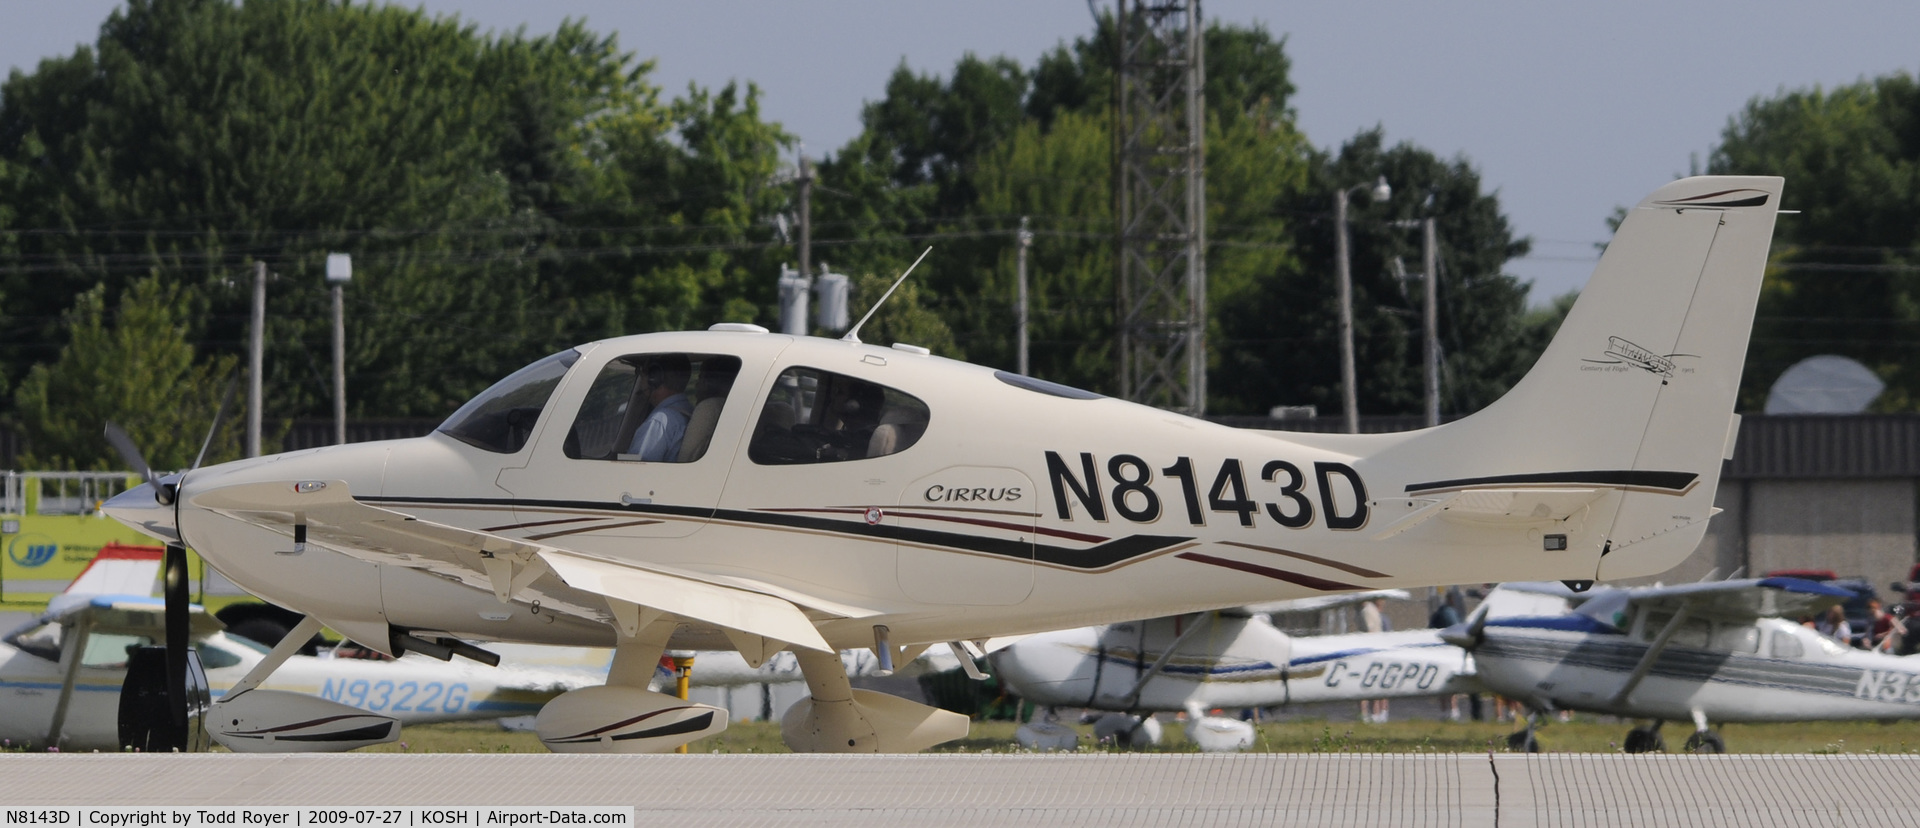 N8143D, 2003 Cirrus SR22 C/N 0678, EAA AIRVENTURE 2009